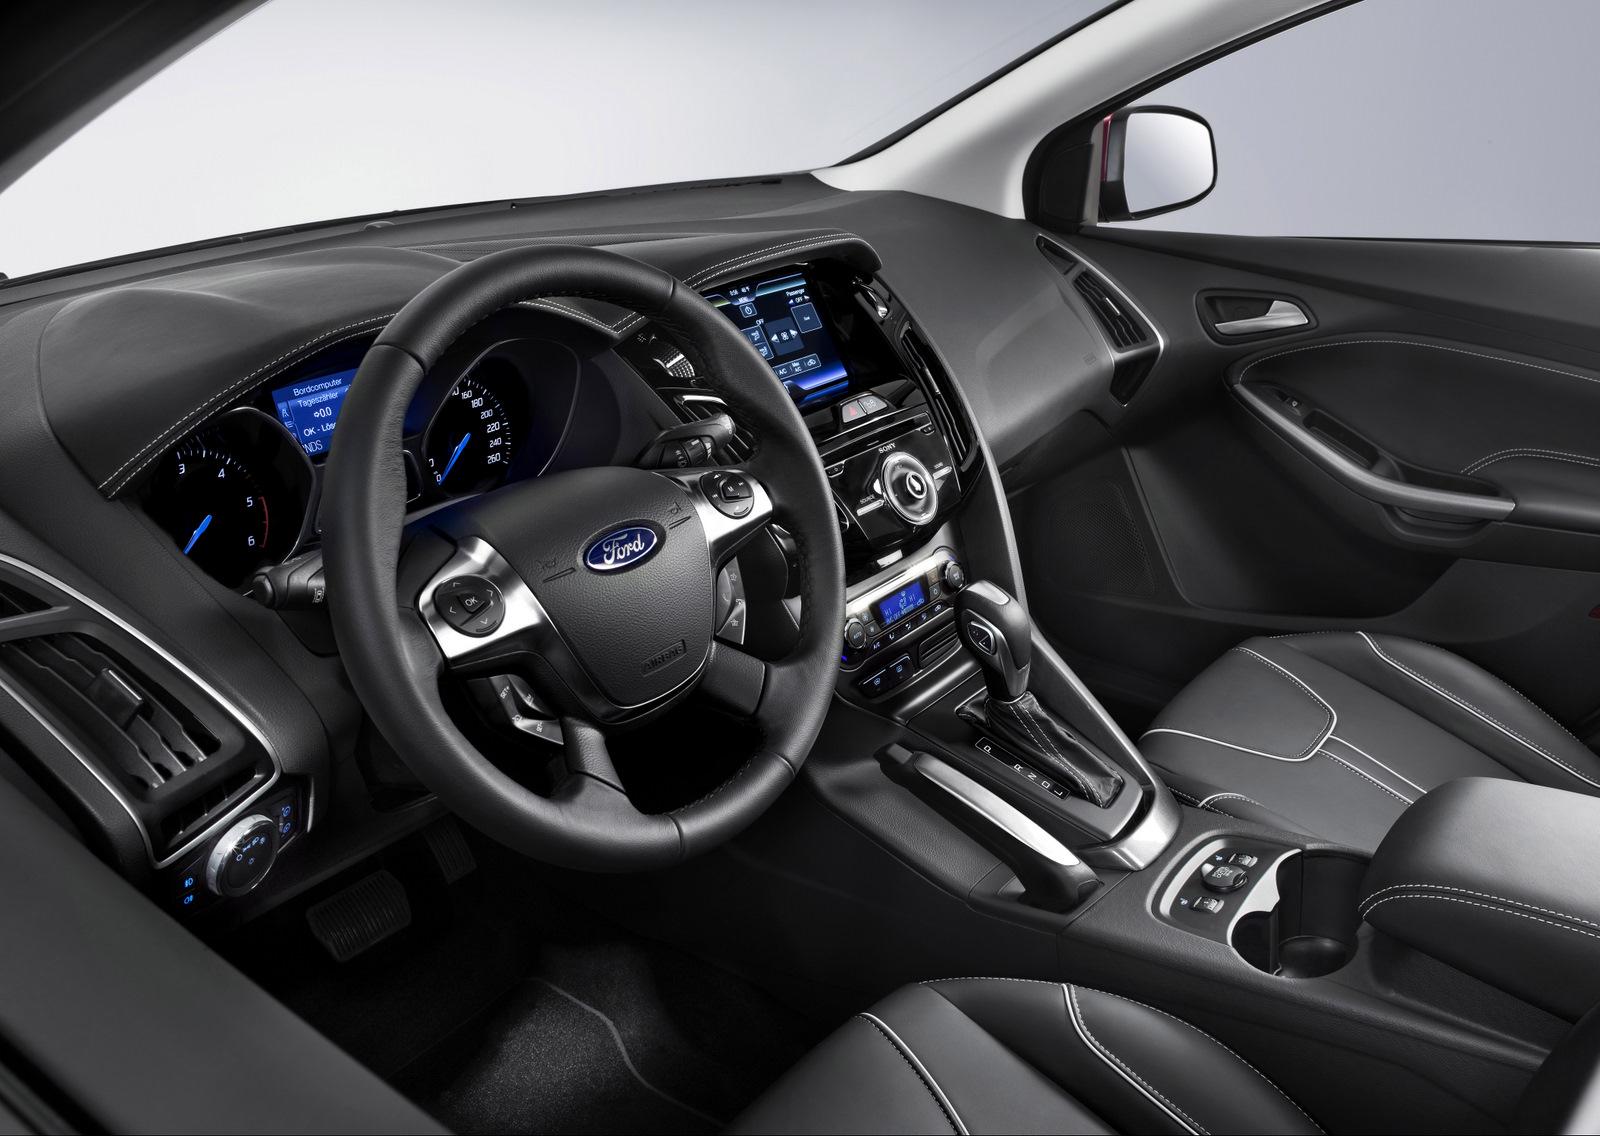 2011 Ford Focus - full details